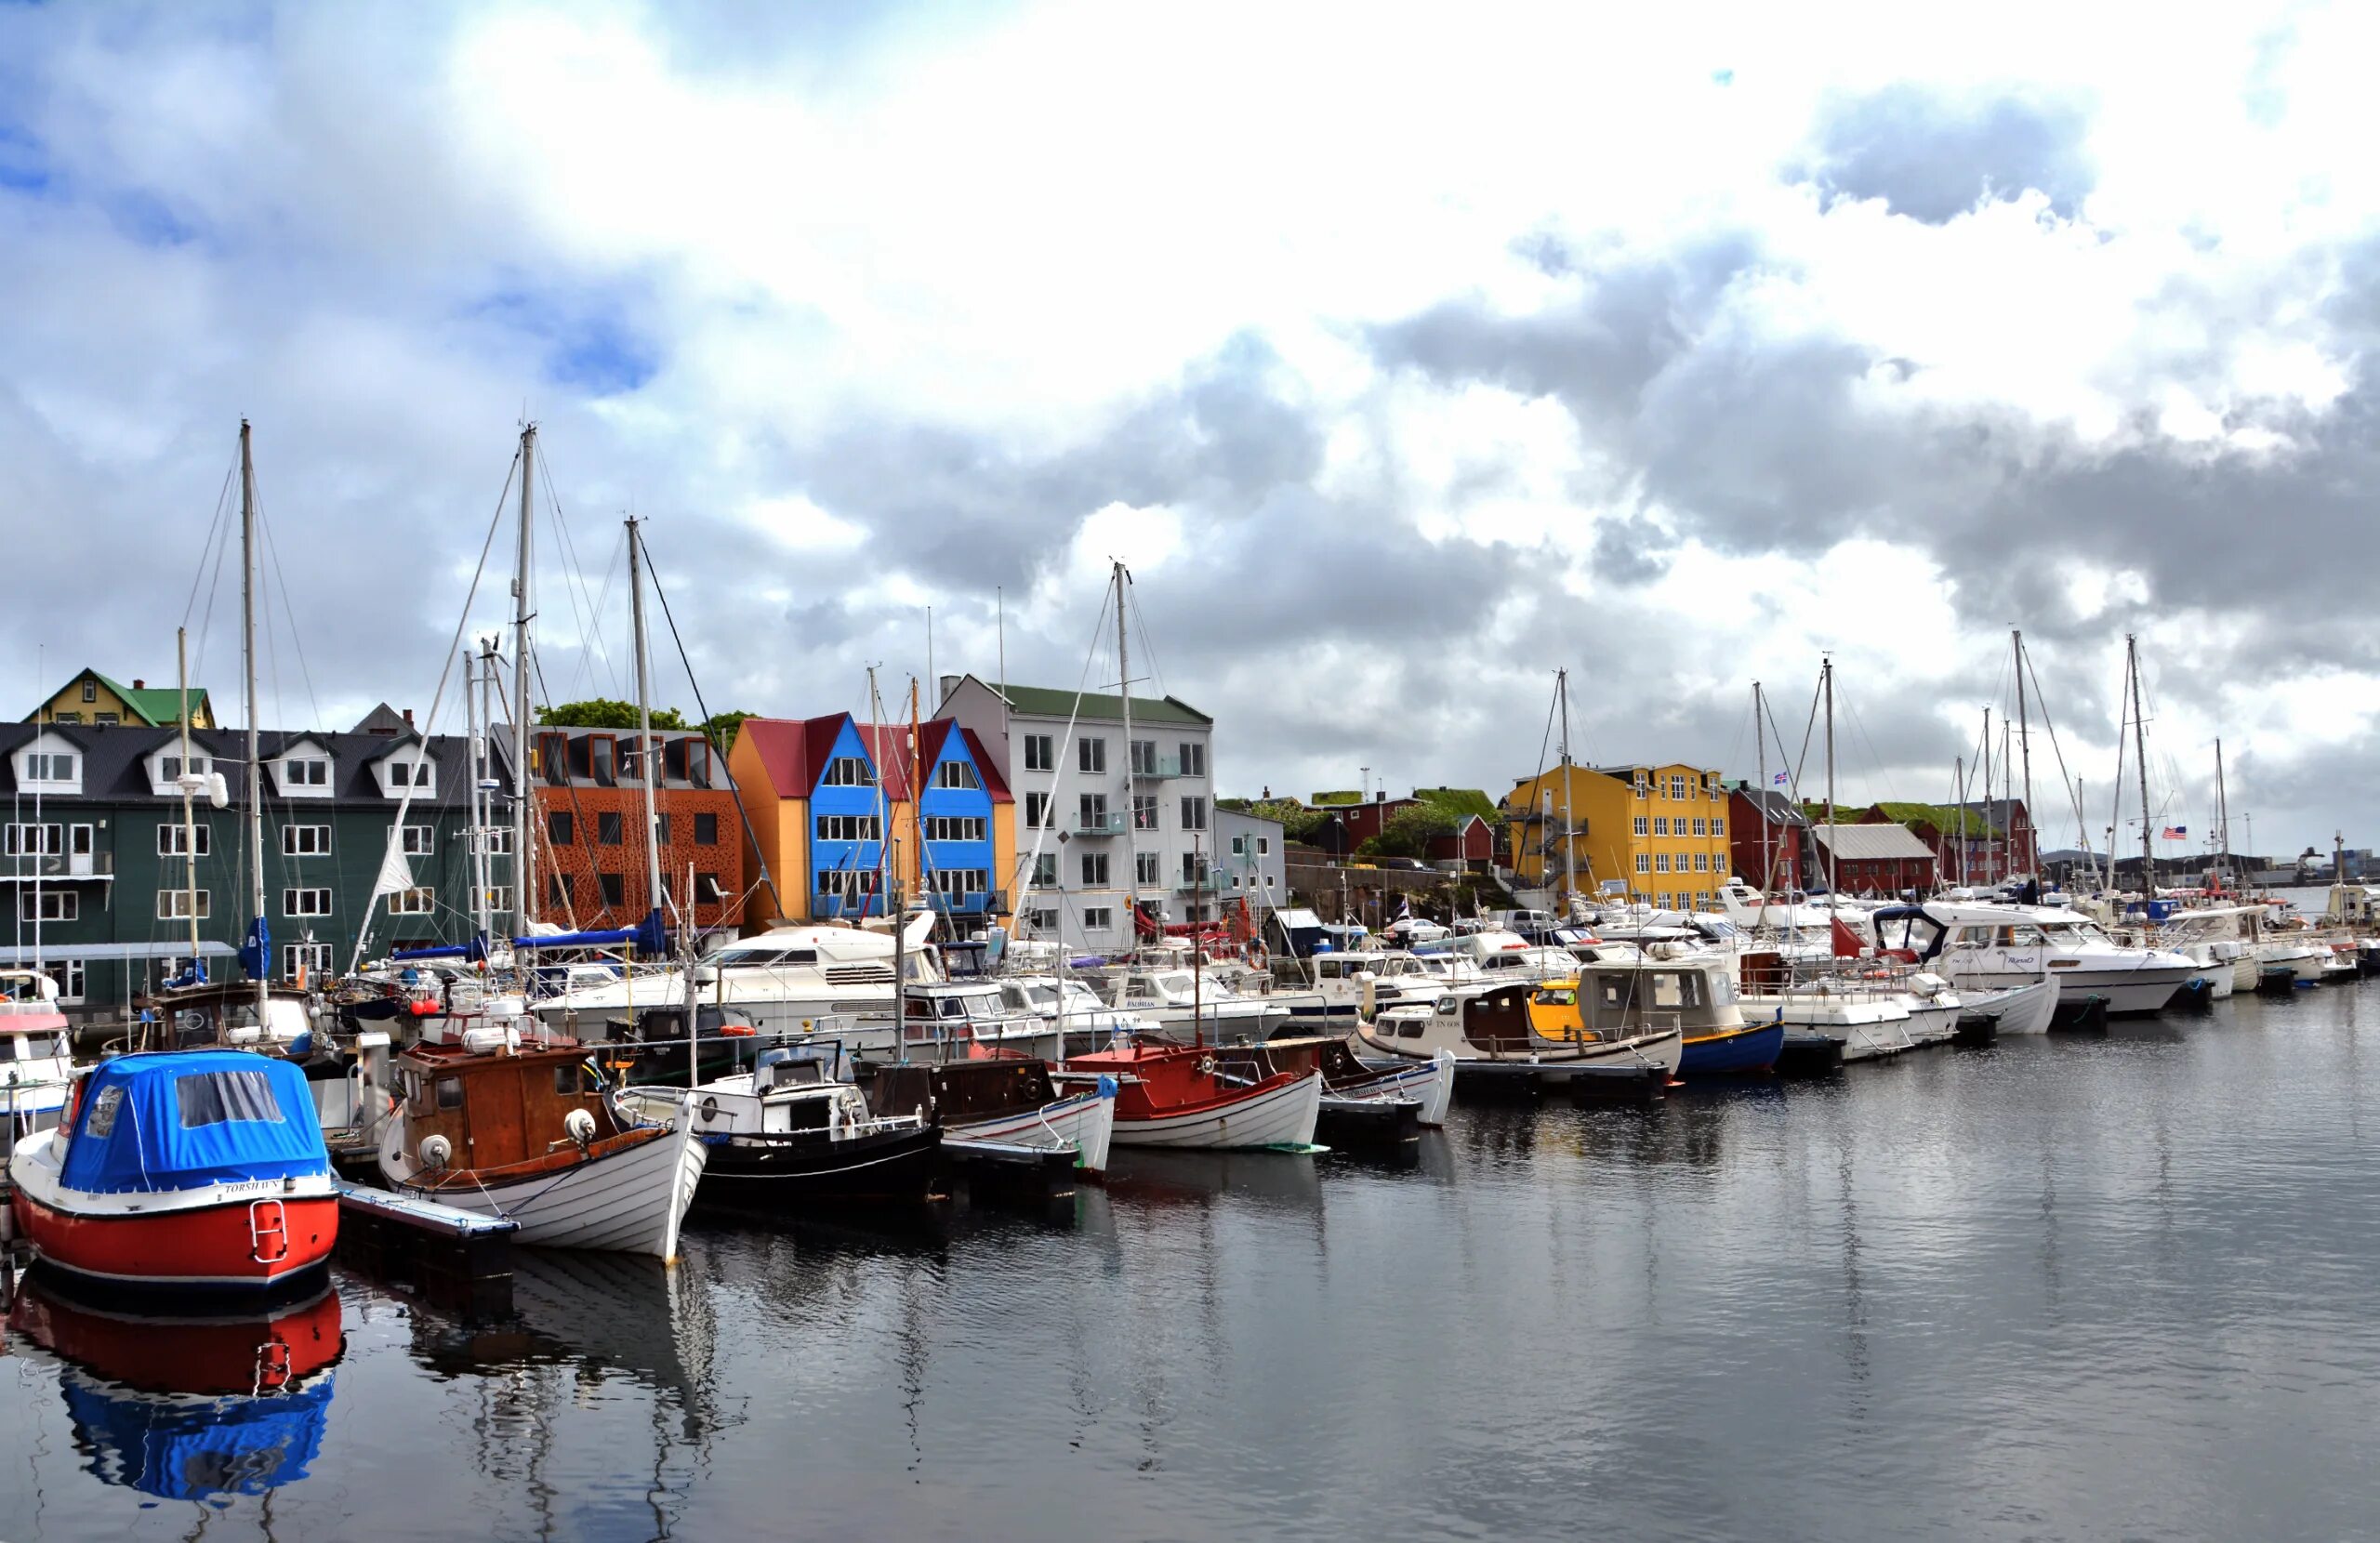 Столица фарерских островов. Торсхавн Фарерские острова. Торсхавн город в Дании. Фарерские острова порт. Порт Торсхавн.